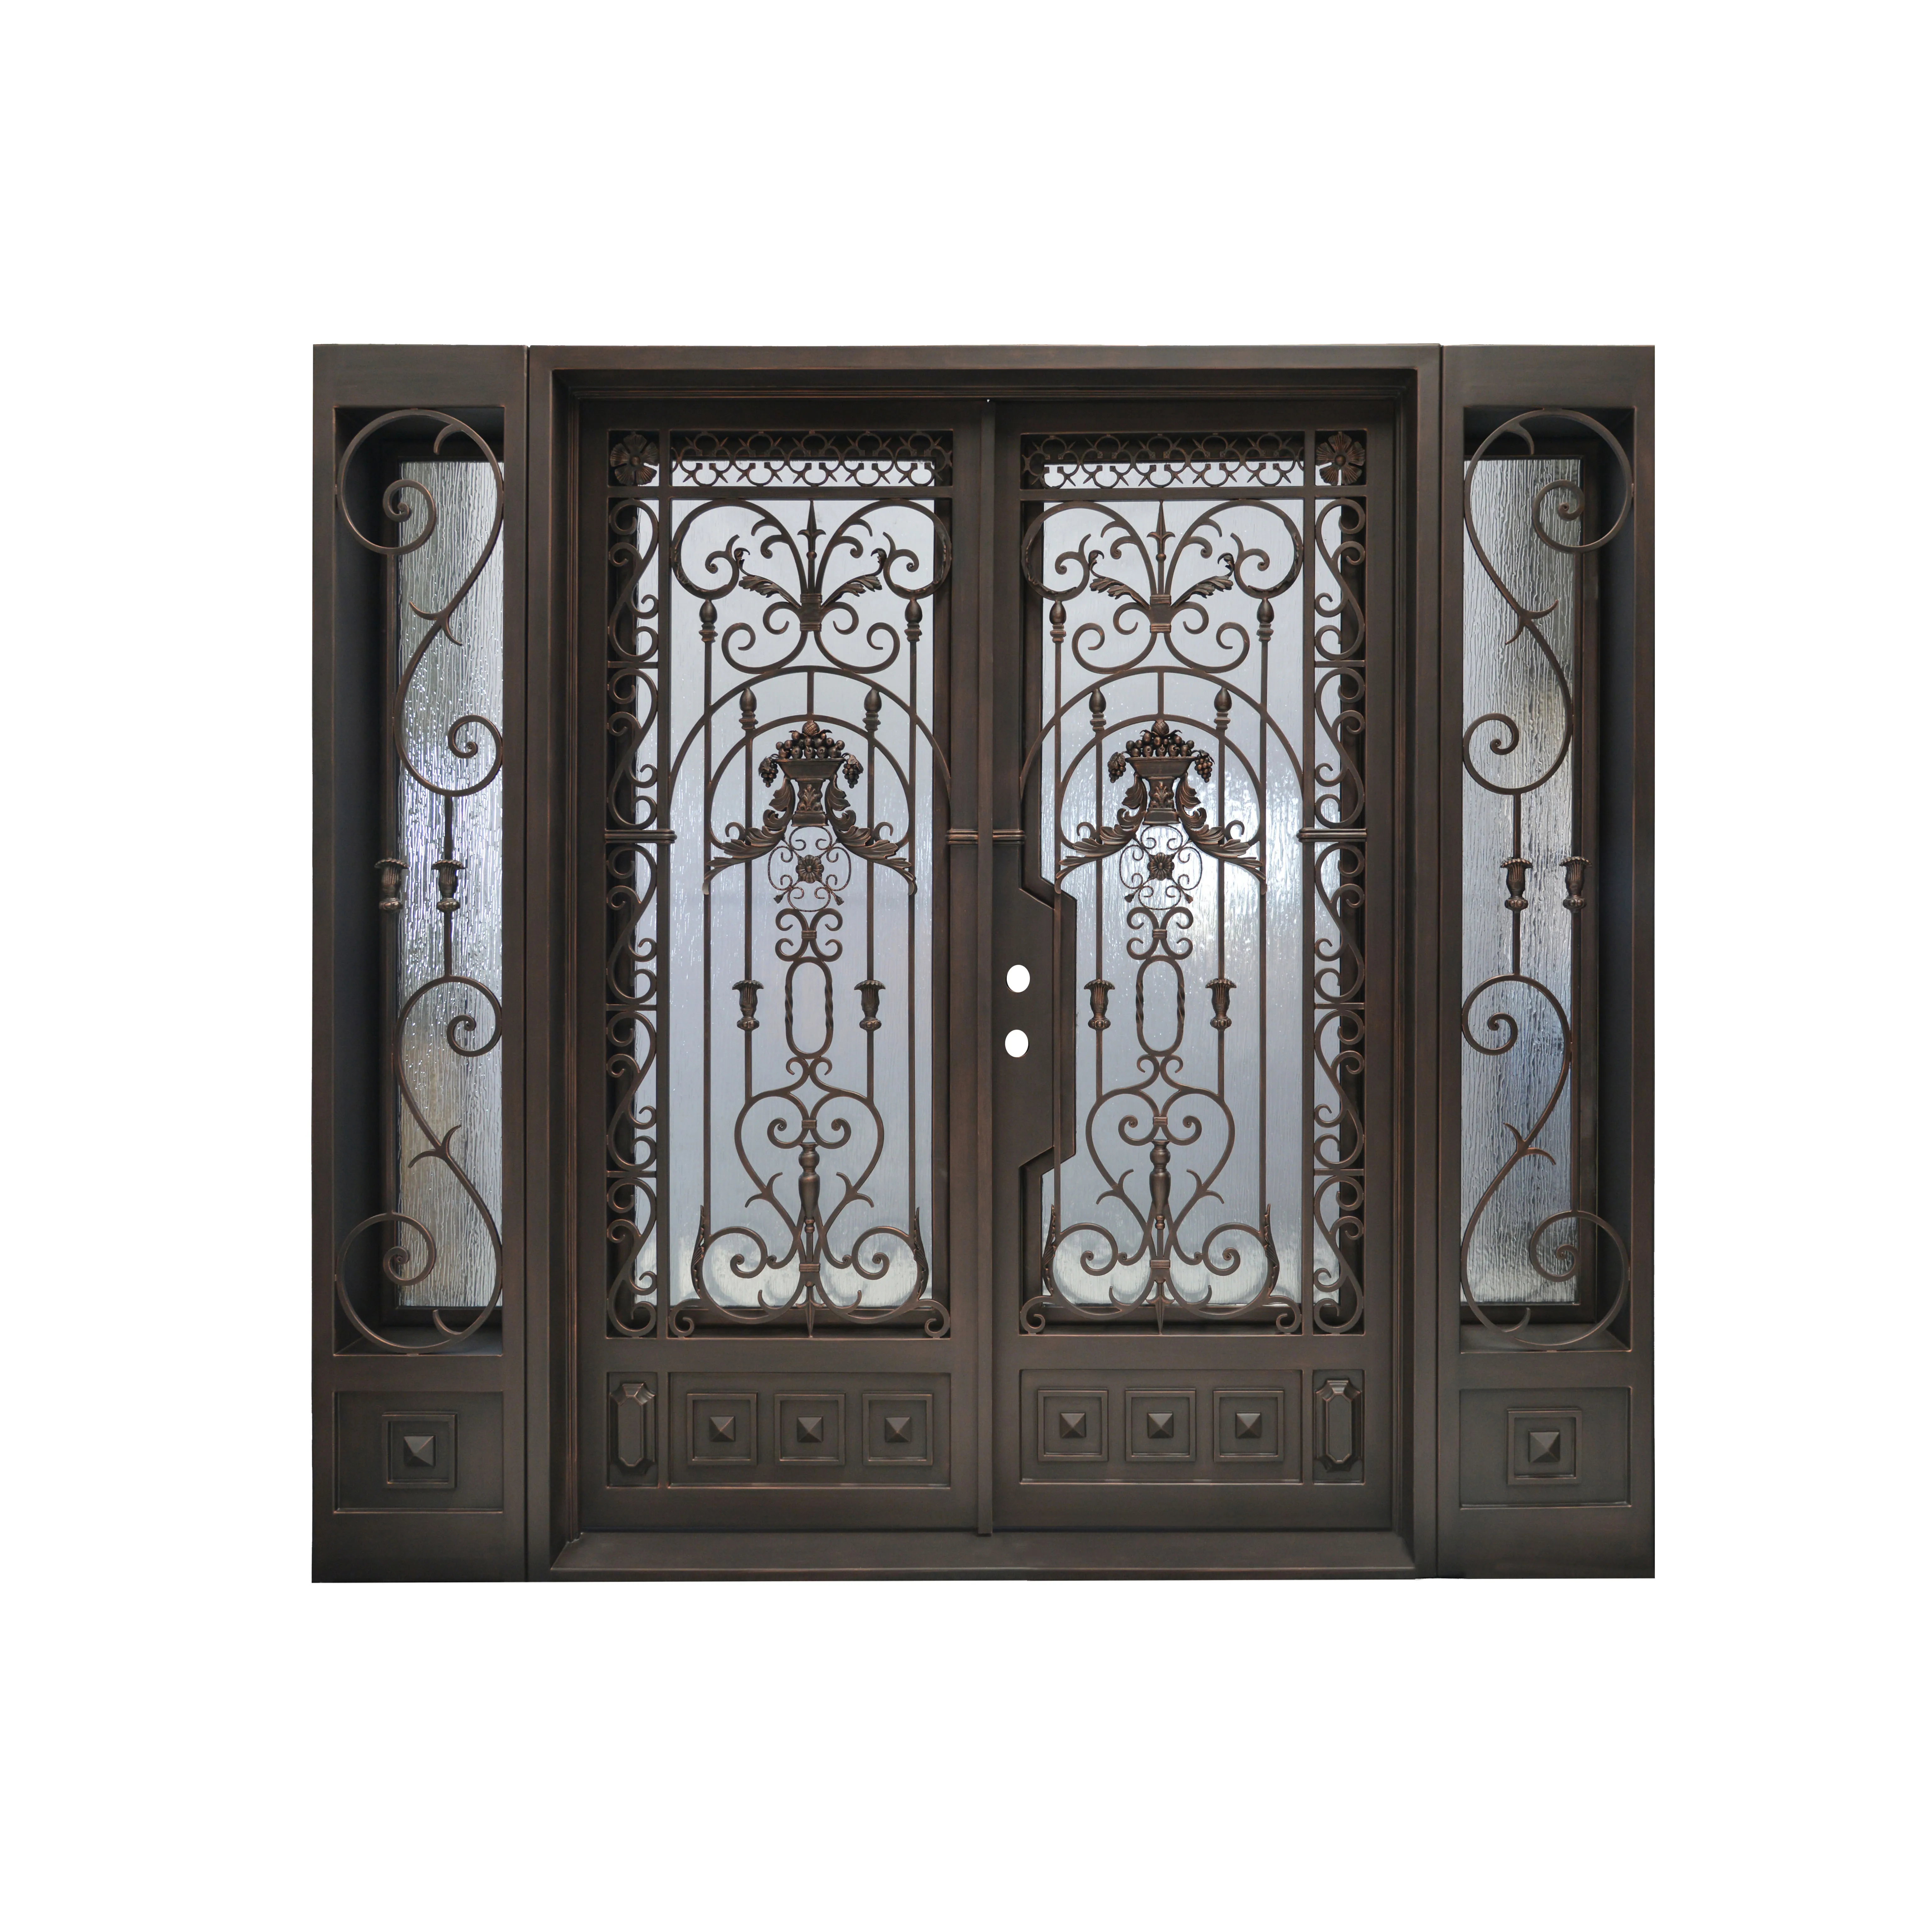 Exterior Commercial Metal Iron Double Door Buy Iron Double Door,Metal Iron Door,Exterior